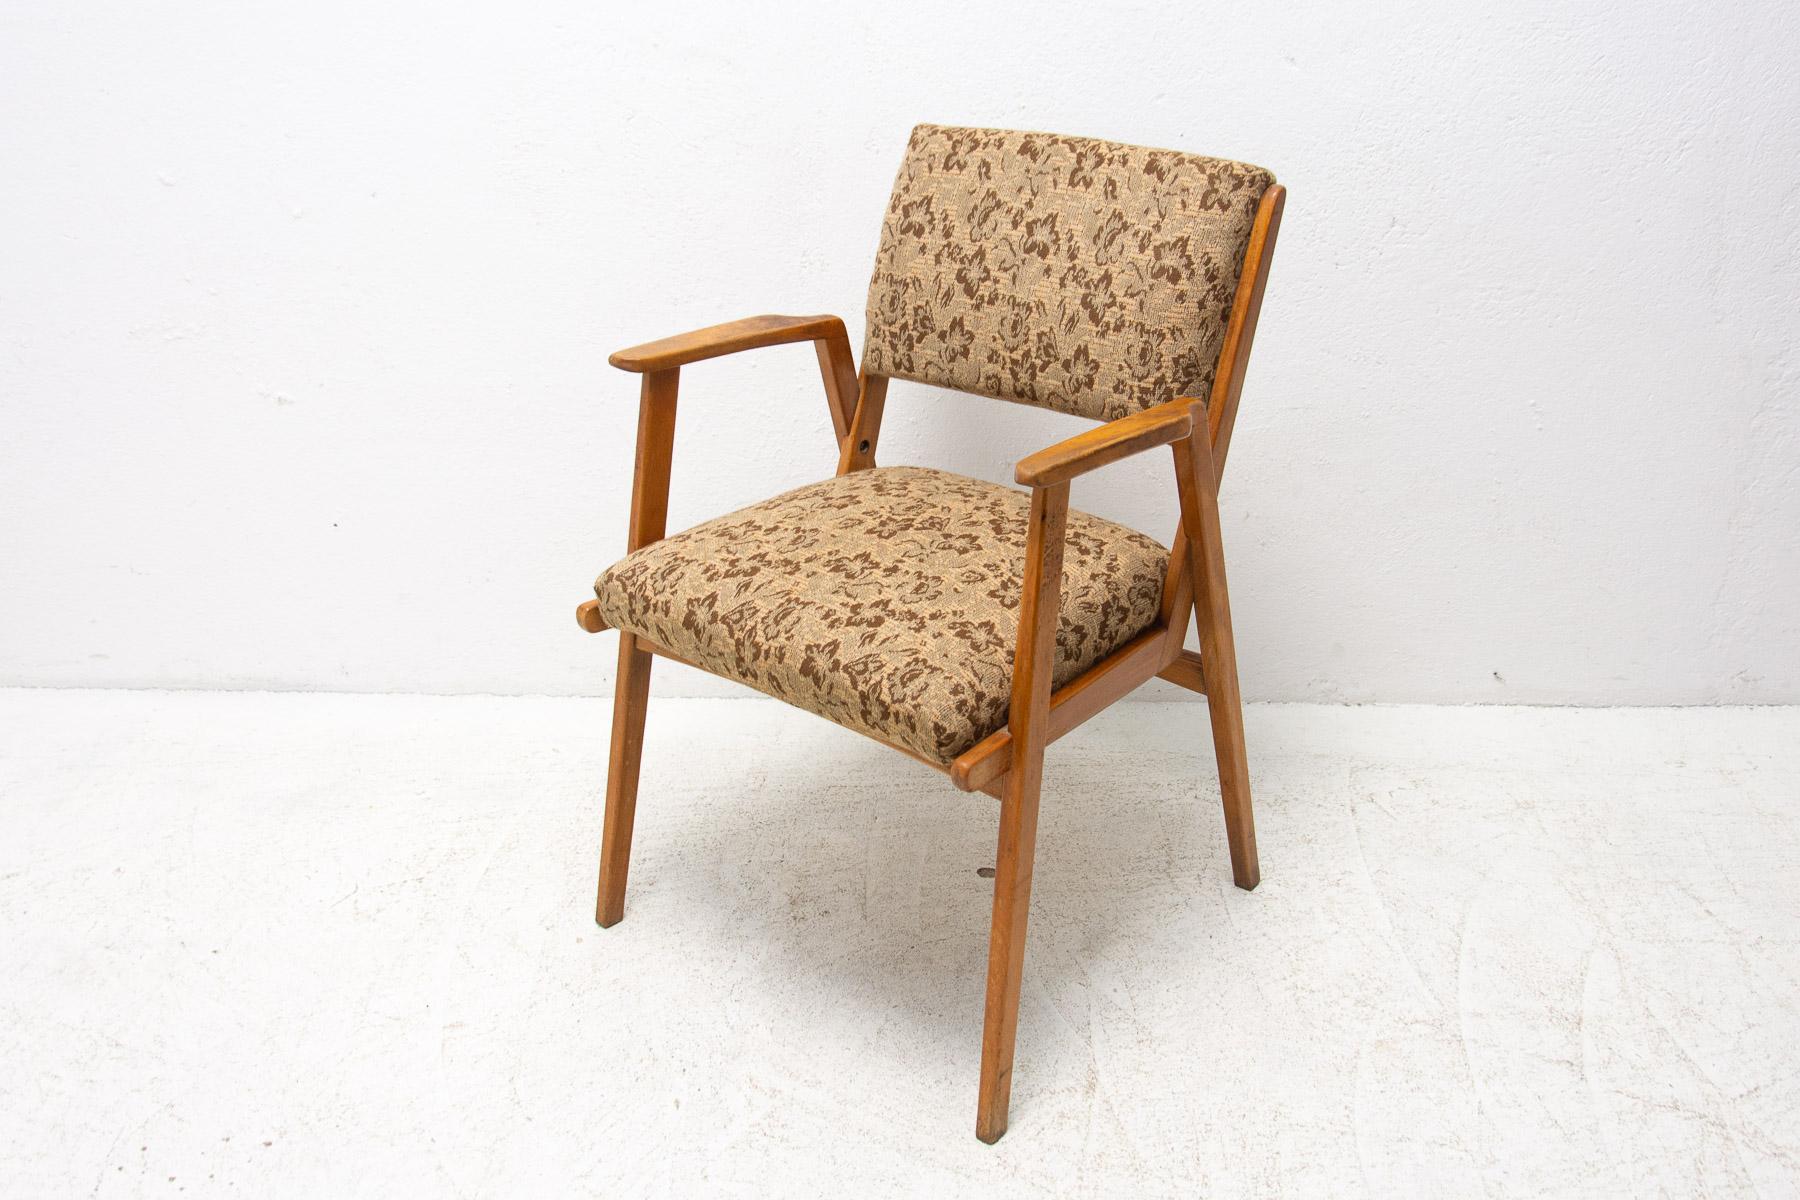 Dieser Sessel wurde in den 1960er Jahren hergestellt. Er kann als Bürostuhl oder Loungesessel verwendet werden. Typisch für das tschechoslowakische Design nach dem großen Erfolg des tschechoslowakischen Pavillons auf der Ausstellung EXPO 58 in